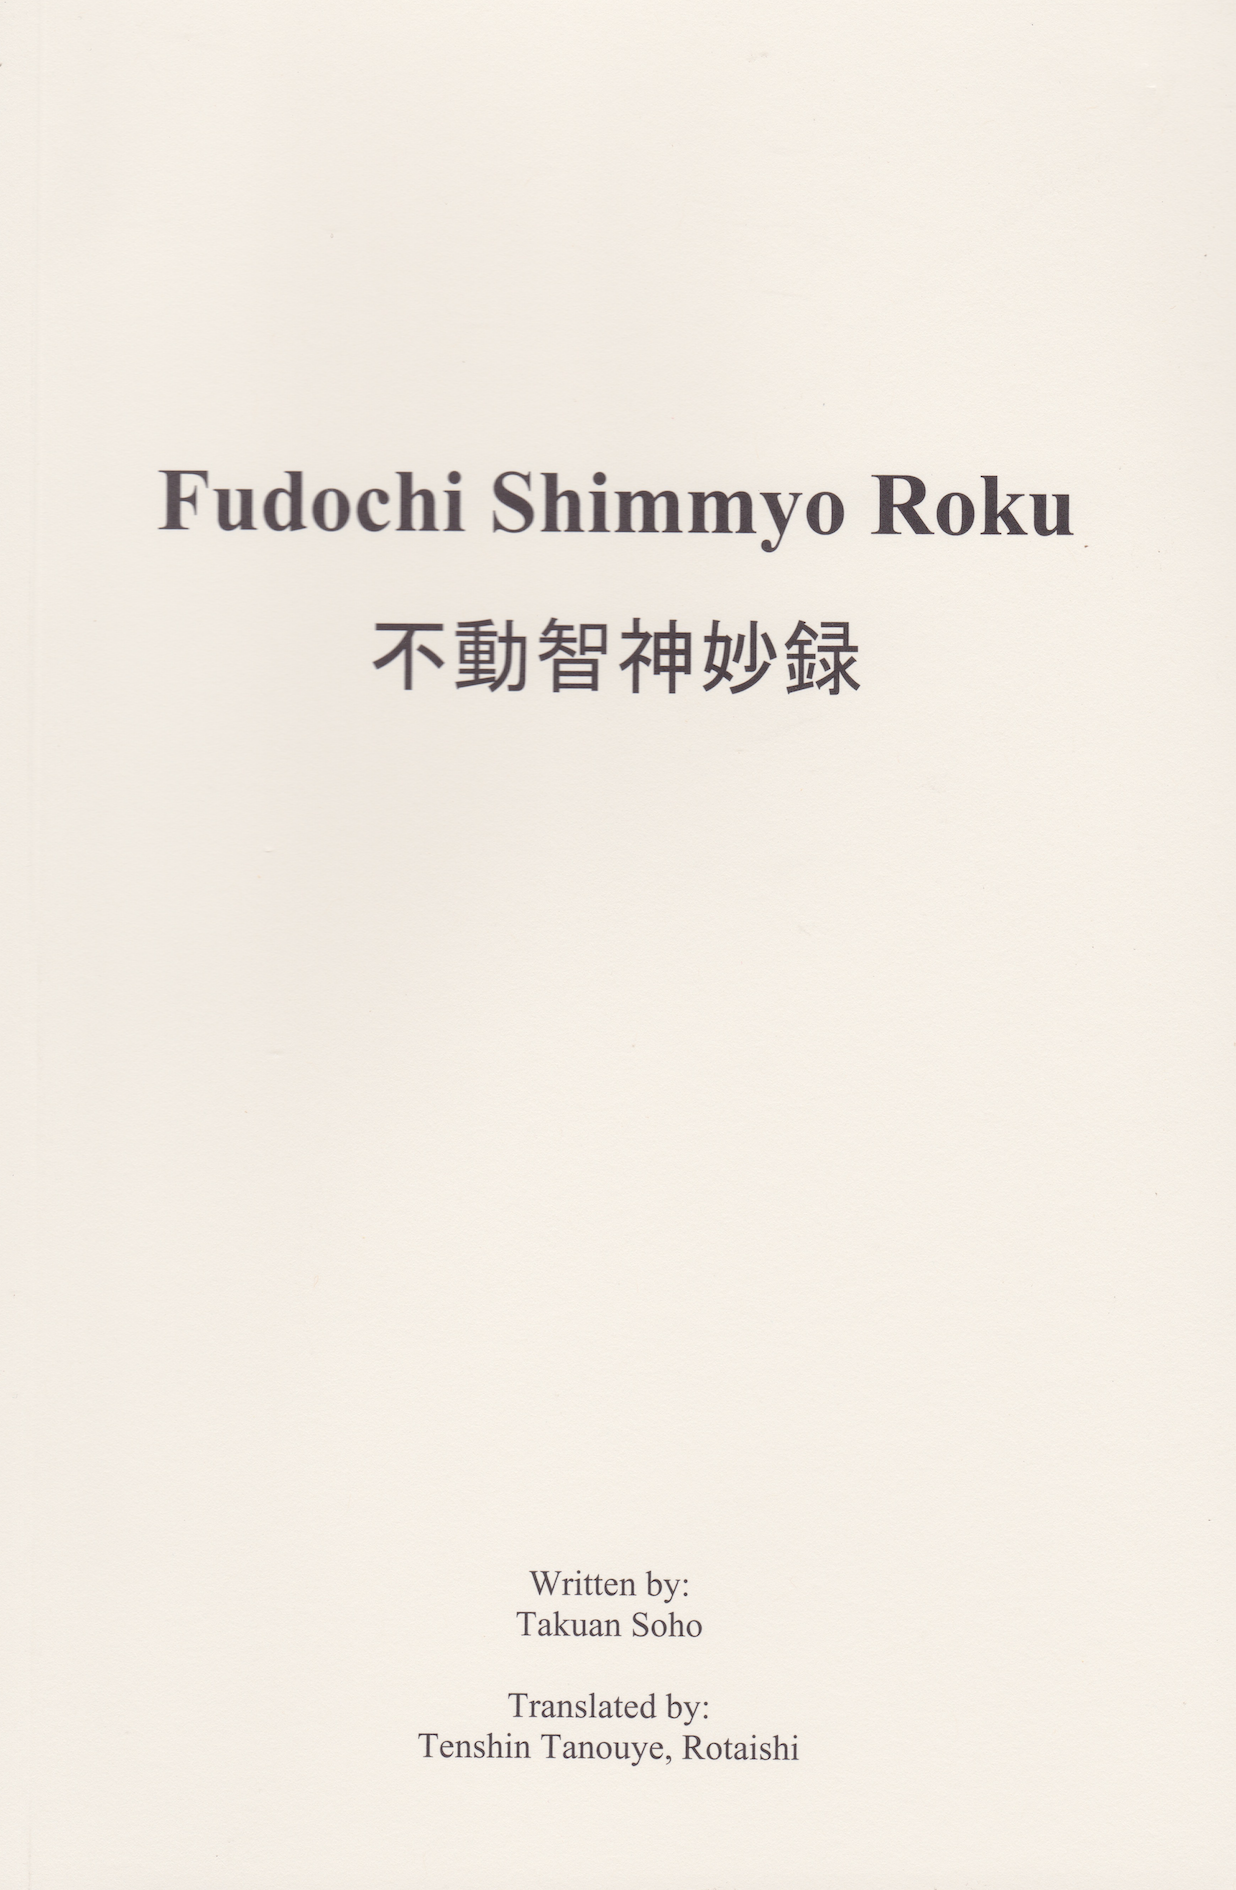 Fudochi Shimmyo Roku Book By Takuan Soho & Translated by Tenshin Tanouye